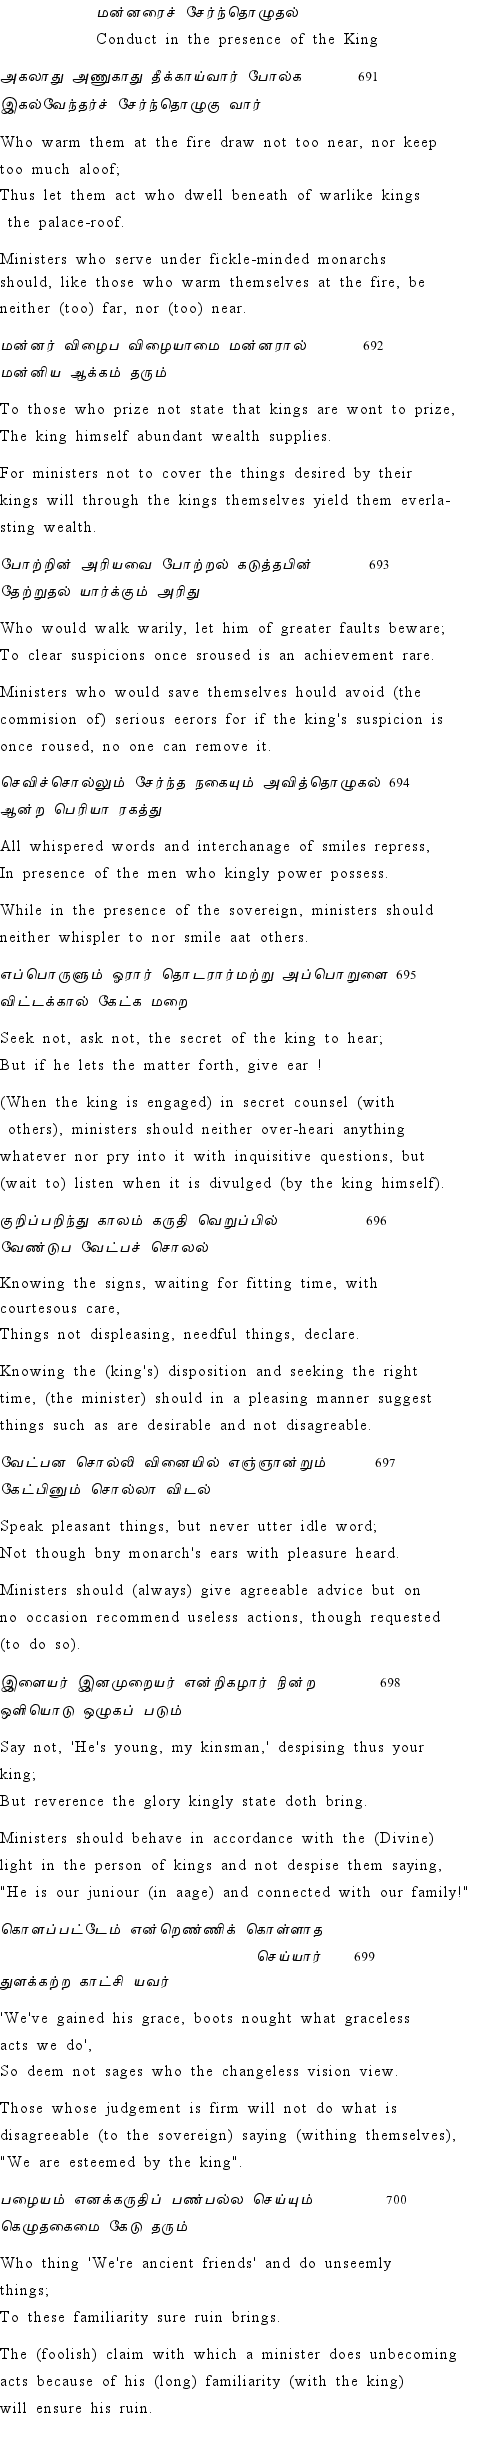 Text of Adhikaram 70